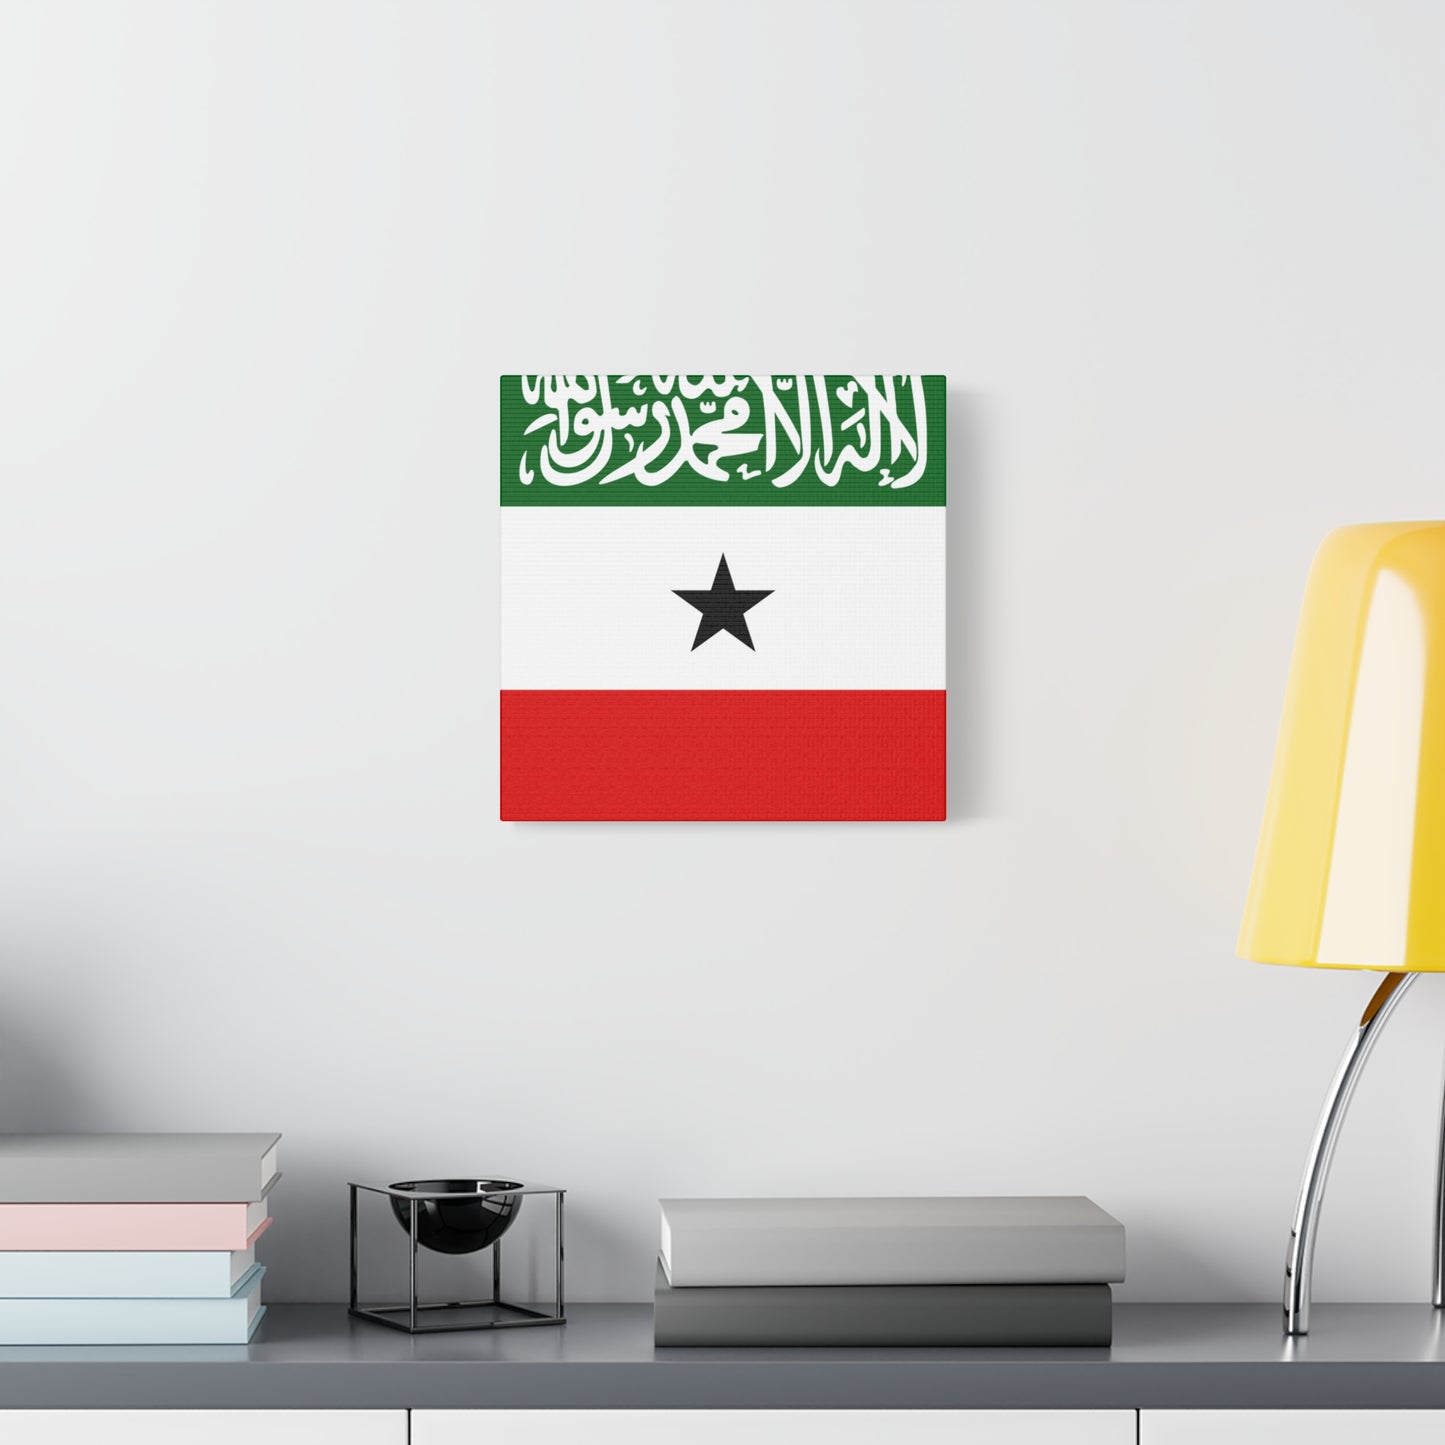 Canvas - Somaliland Flag